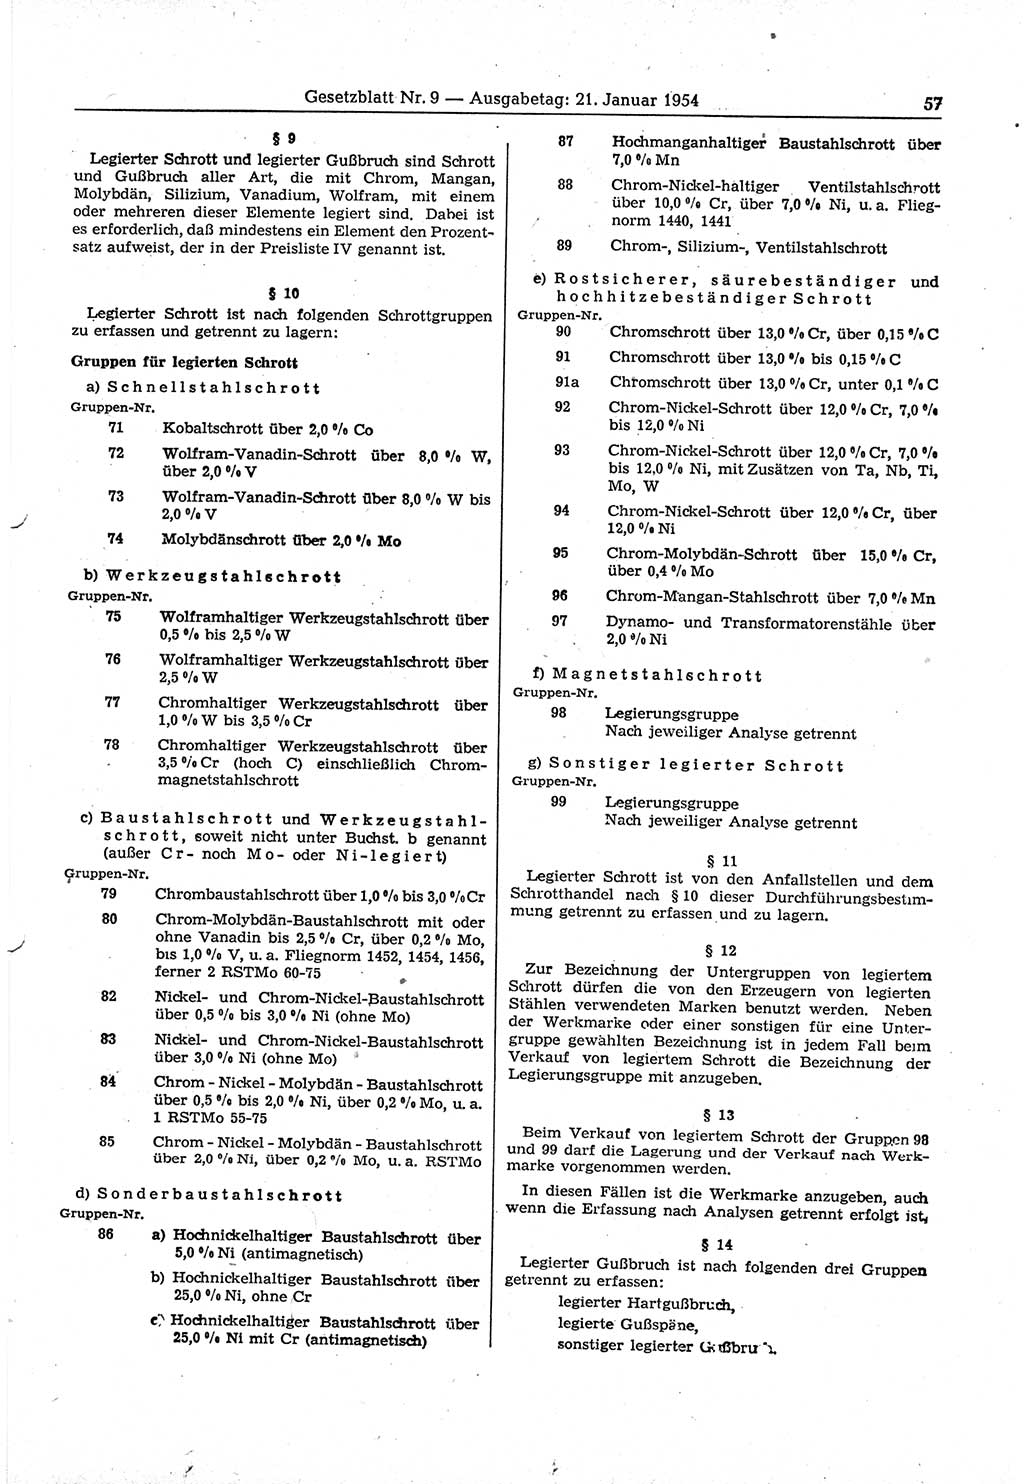 Gesetzblatt (GBl.) der Deutschen Demokratischen Republik (DDR) 1954, Seite 57 (GBl. DDR 1954, S. 57)